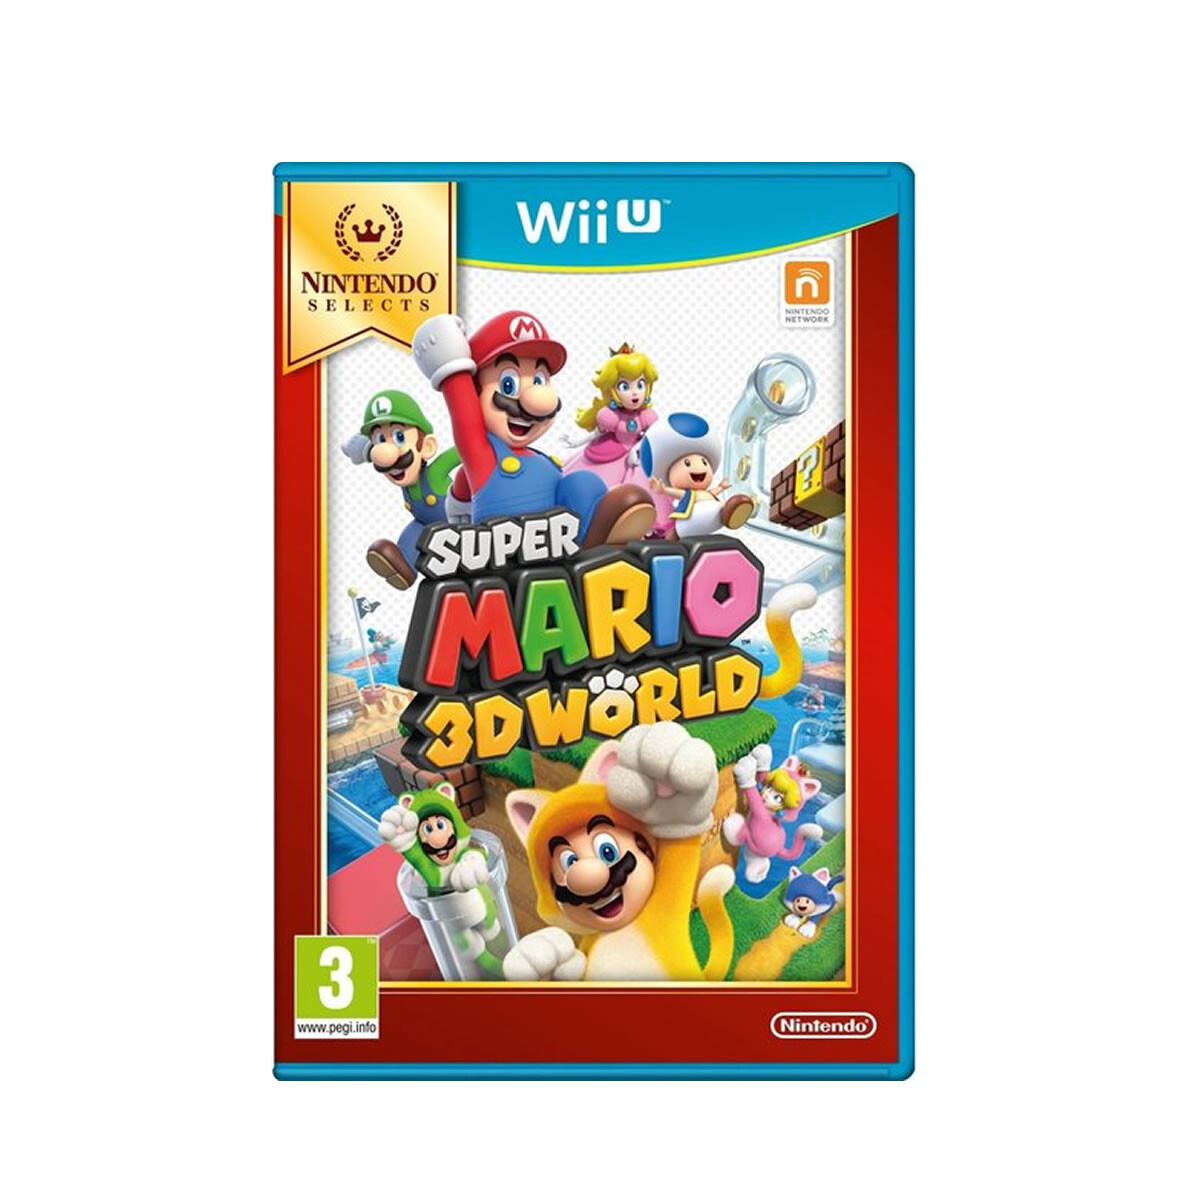 WIIU Super Mario 3D World 